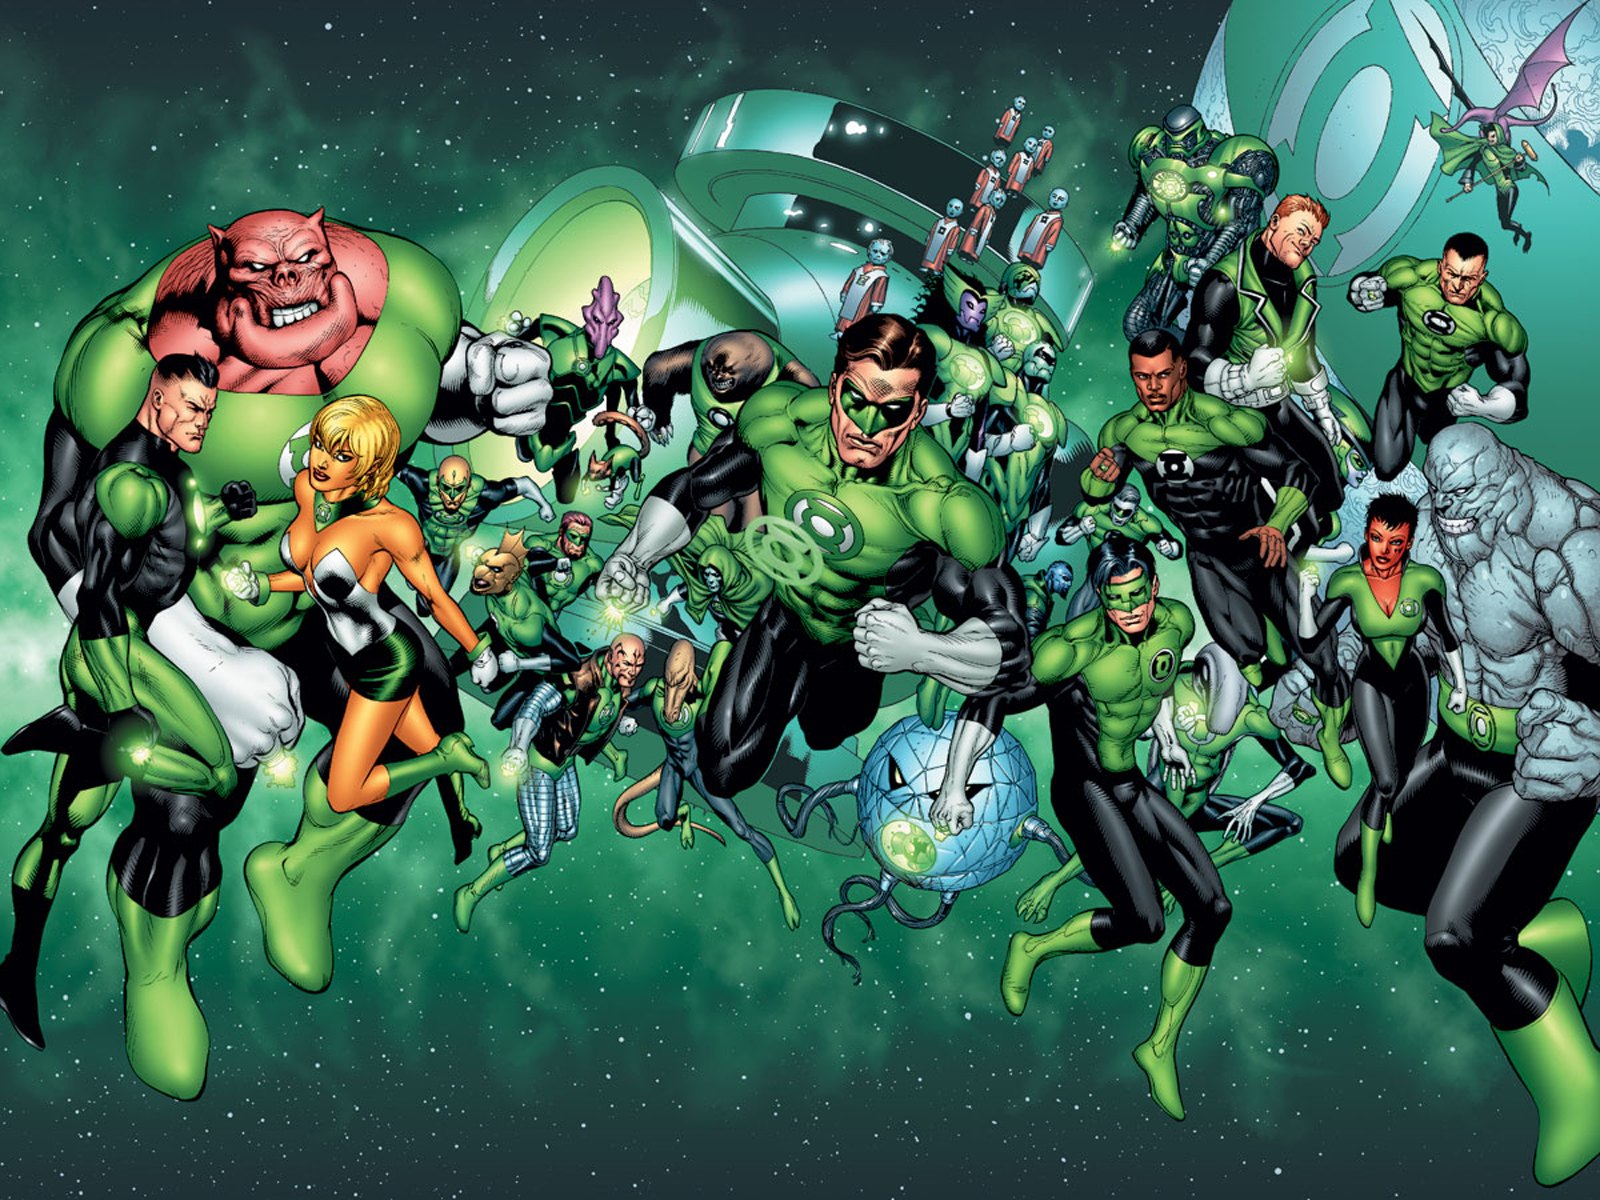 New Green Lantern Promise Origin Stories for Two Major Lanterns